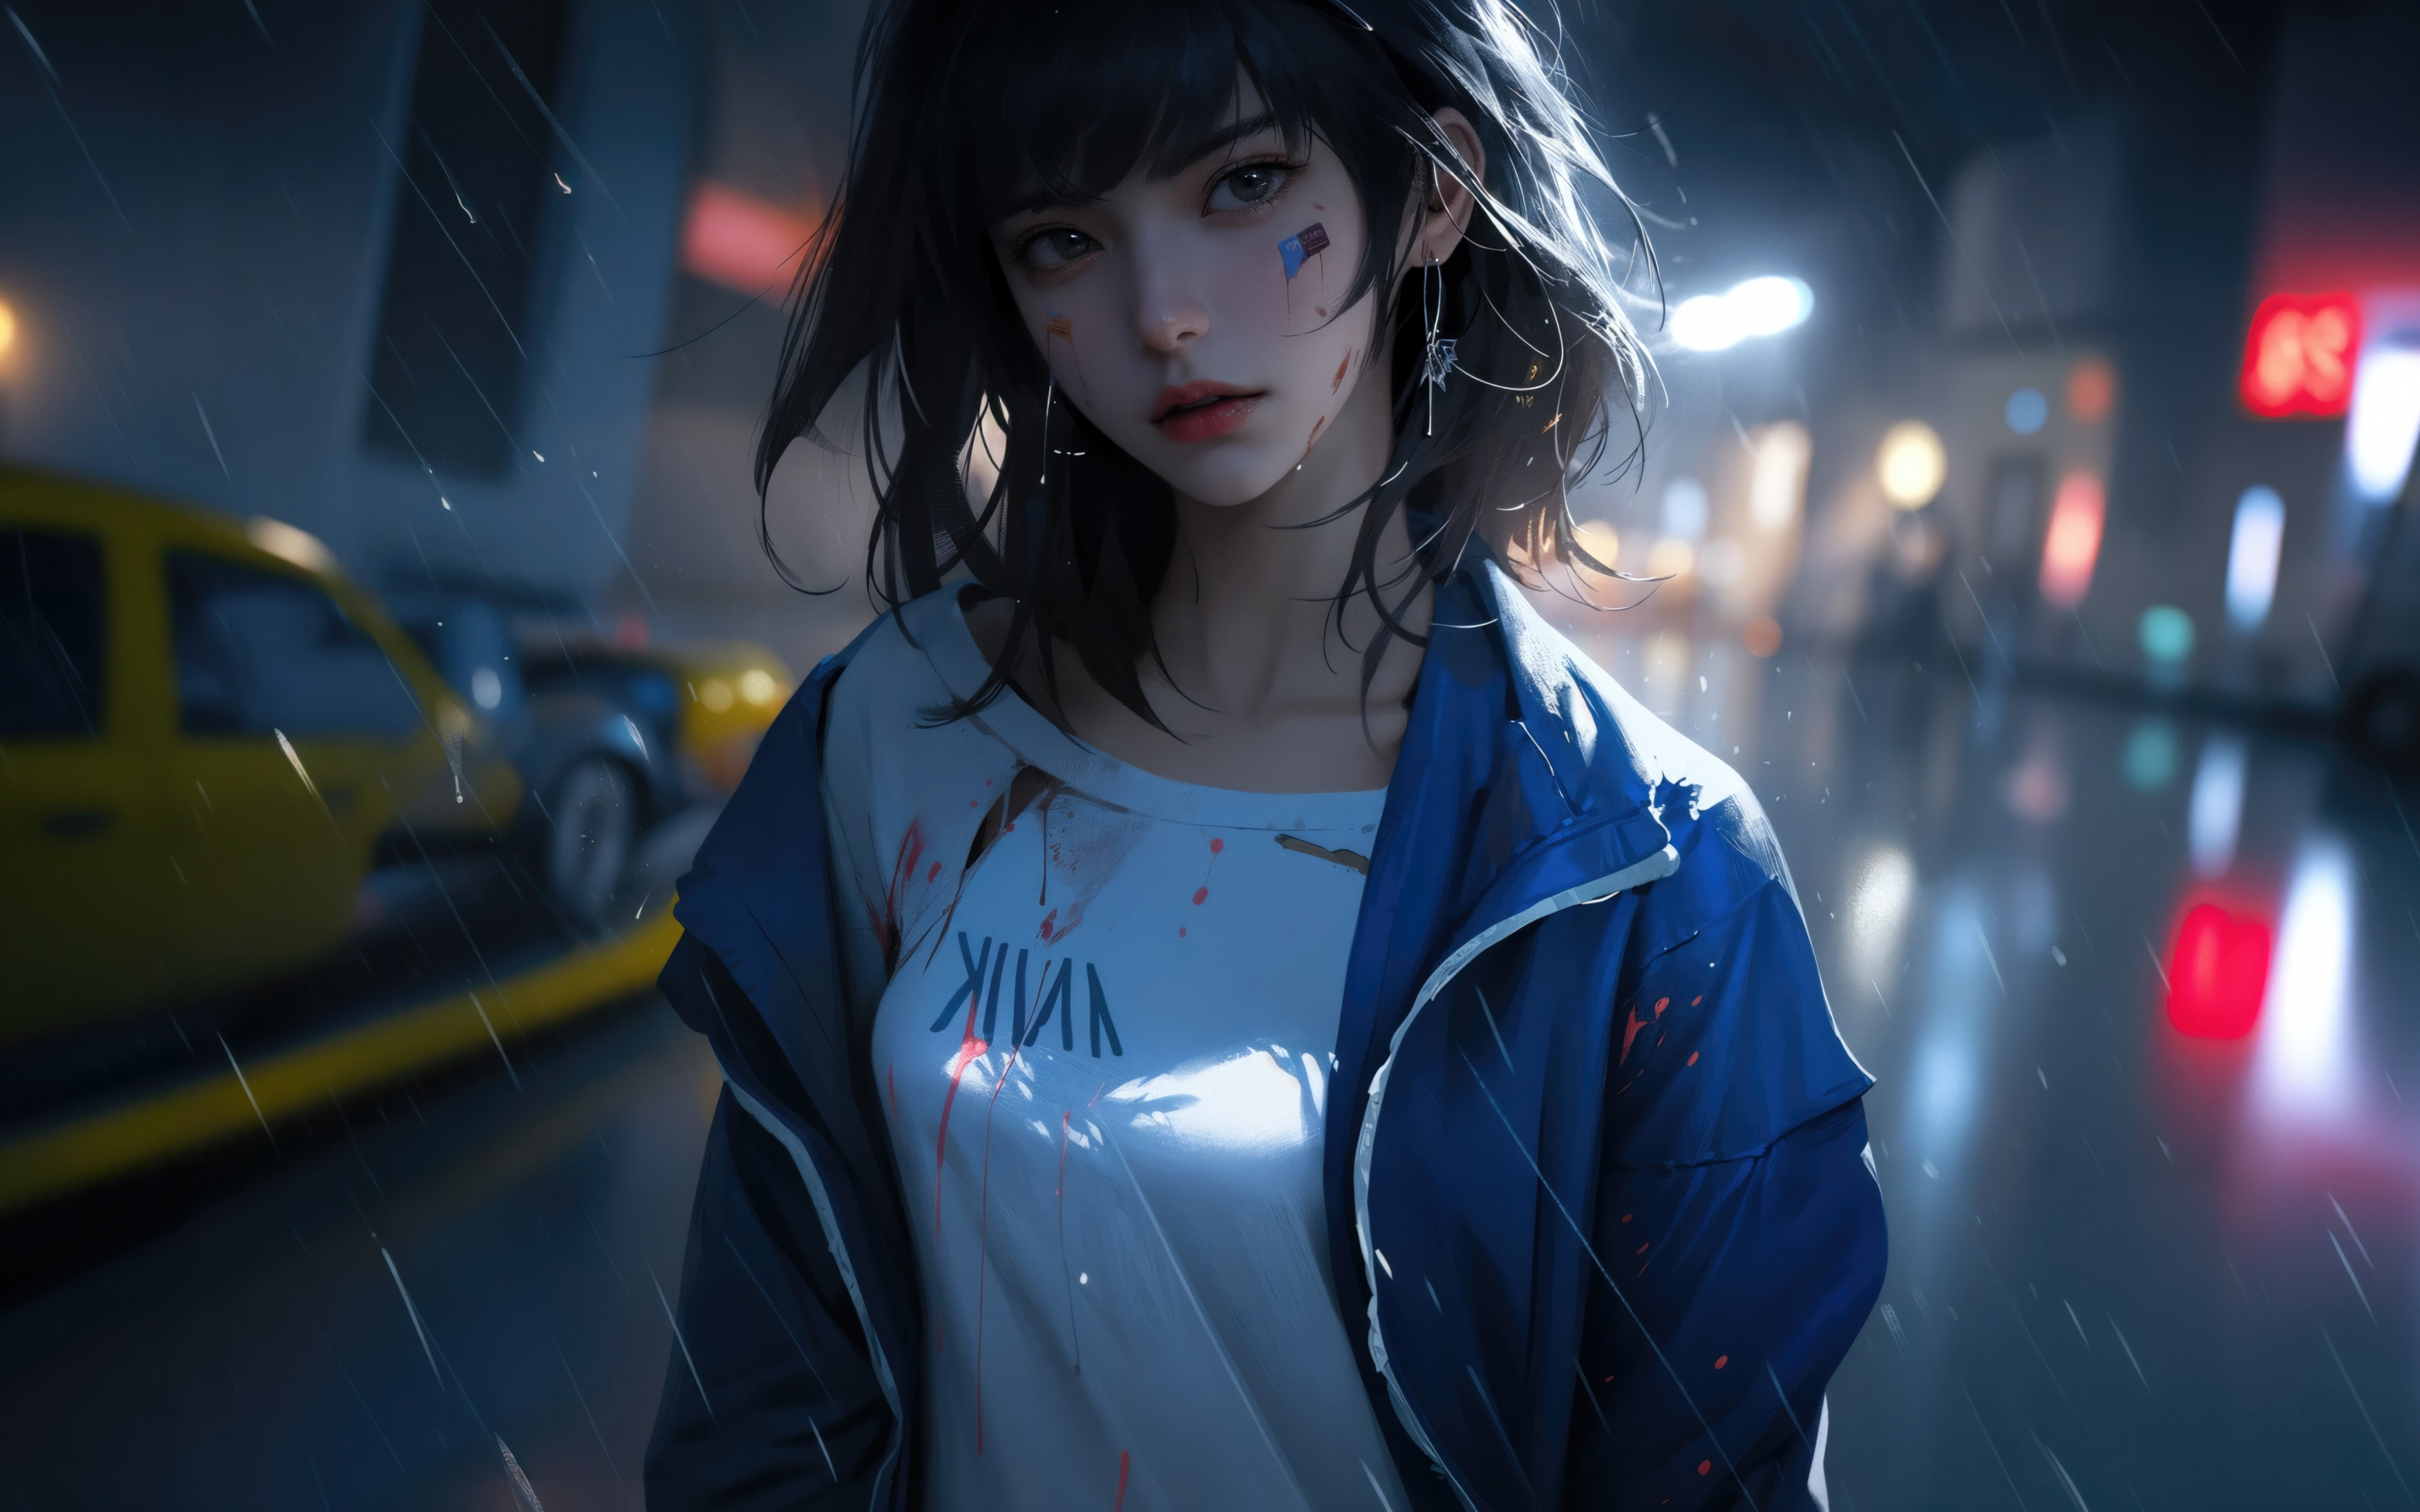 Anime girl in rain, 2023 fan art, 2880x1800 wallpaper